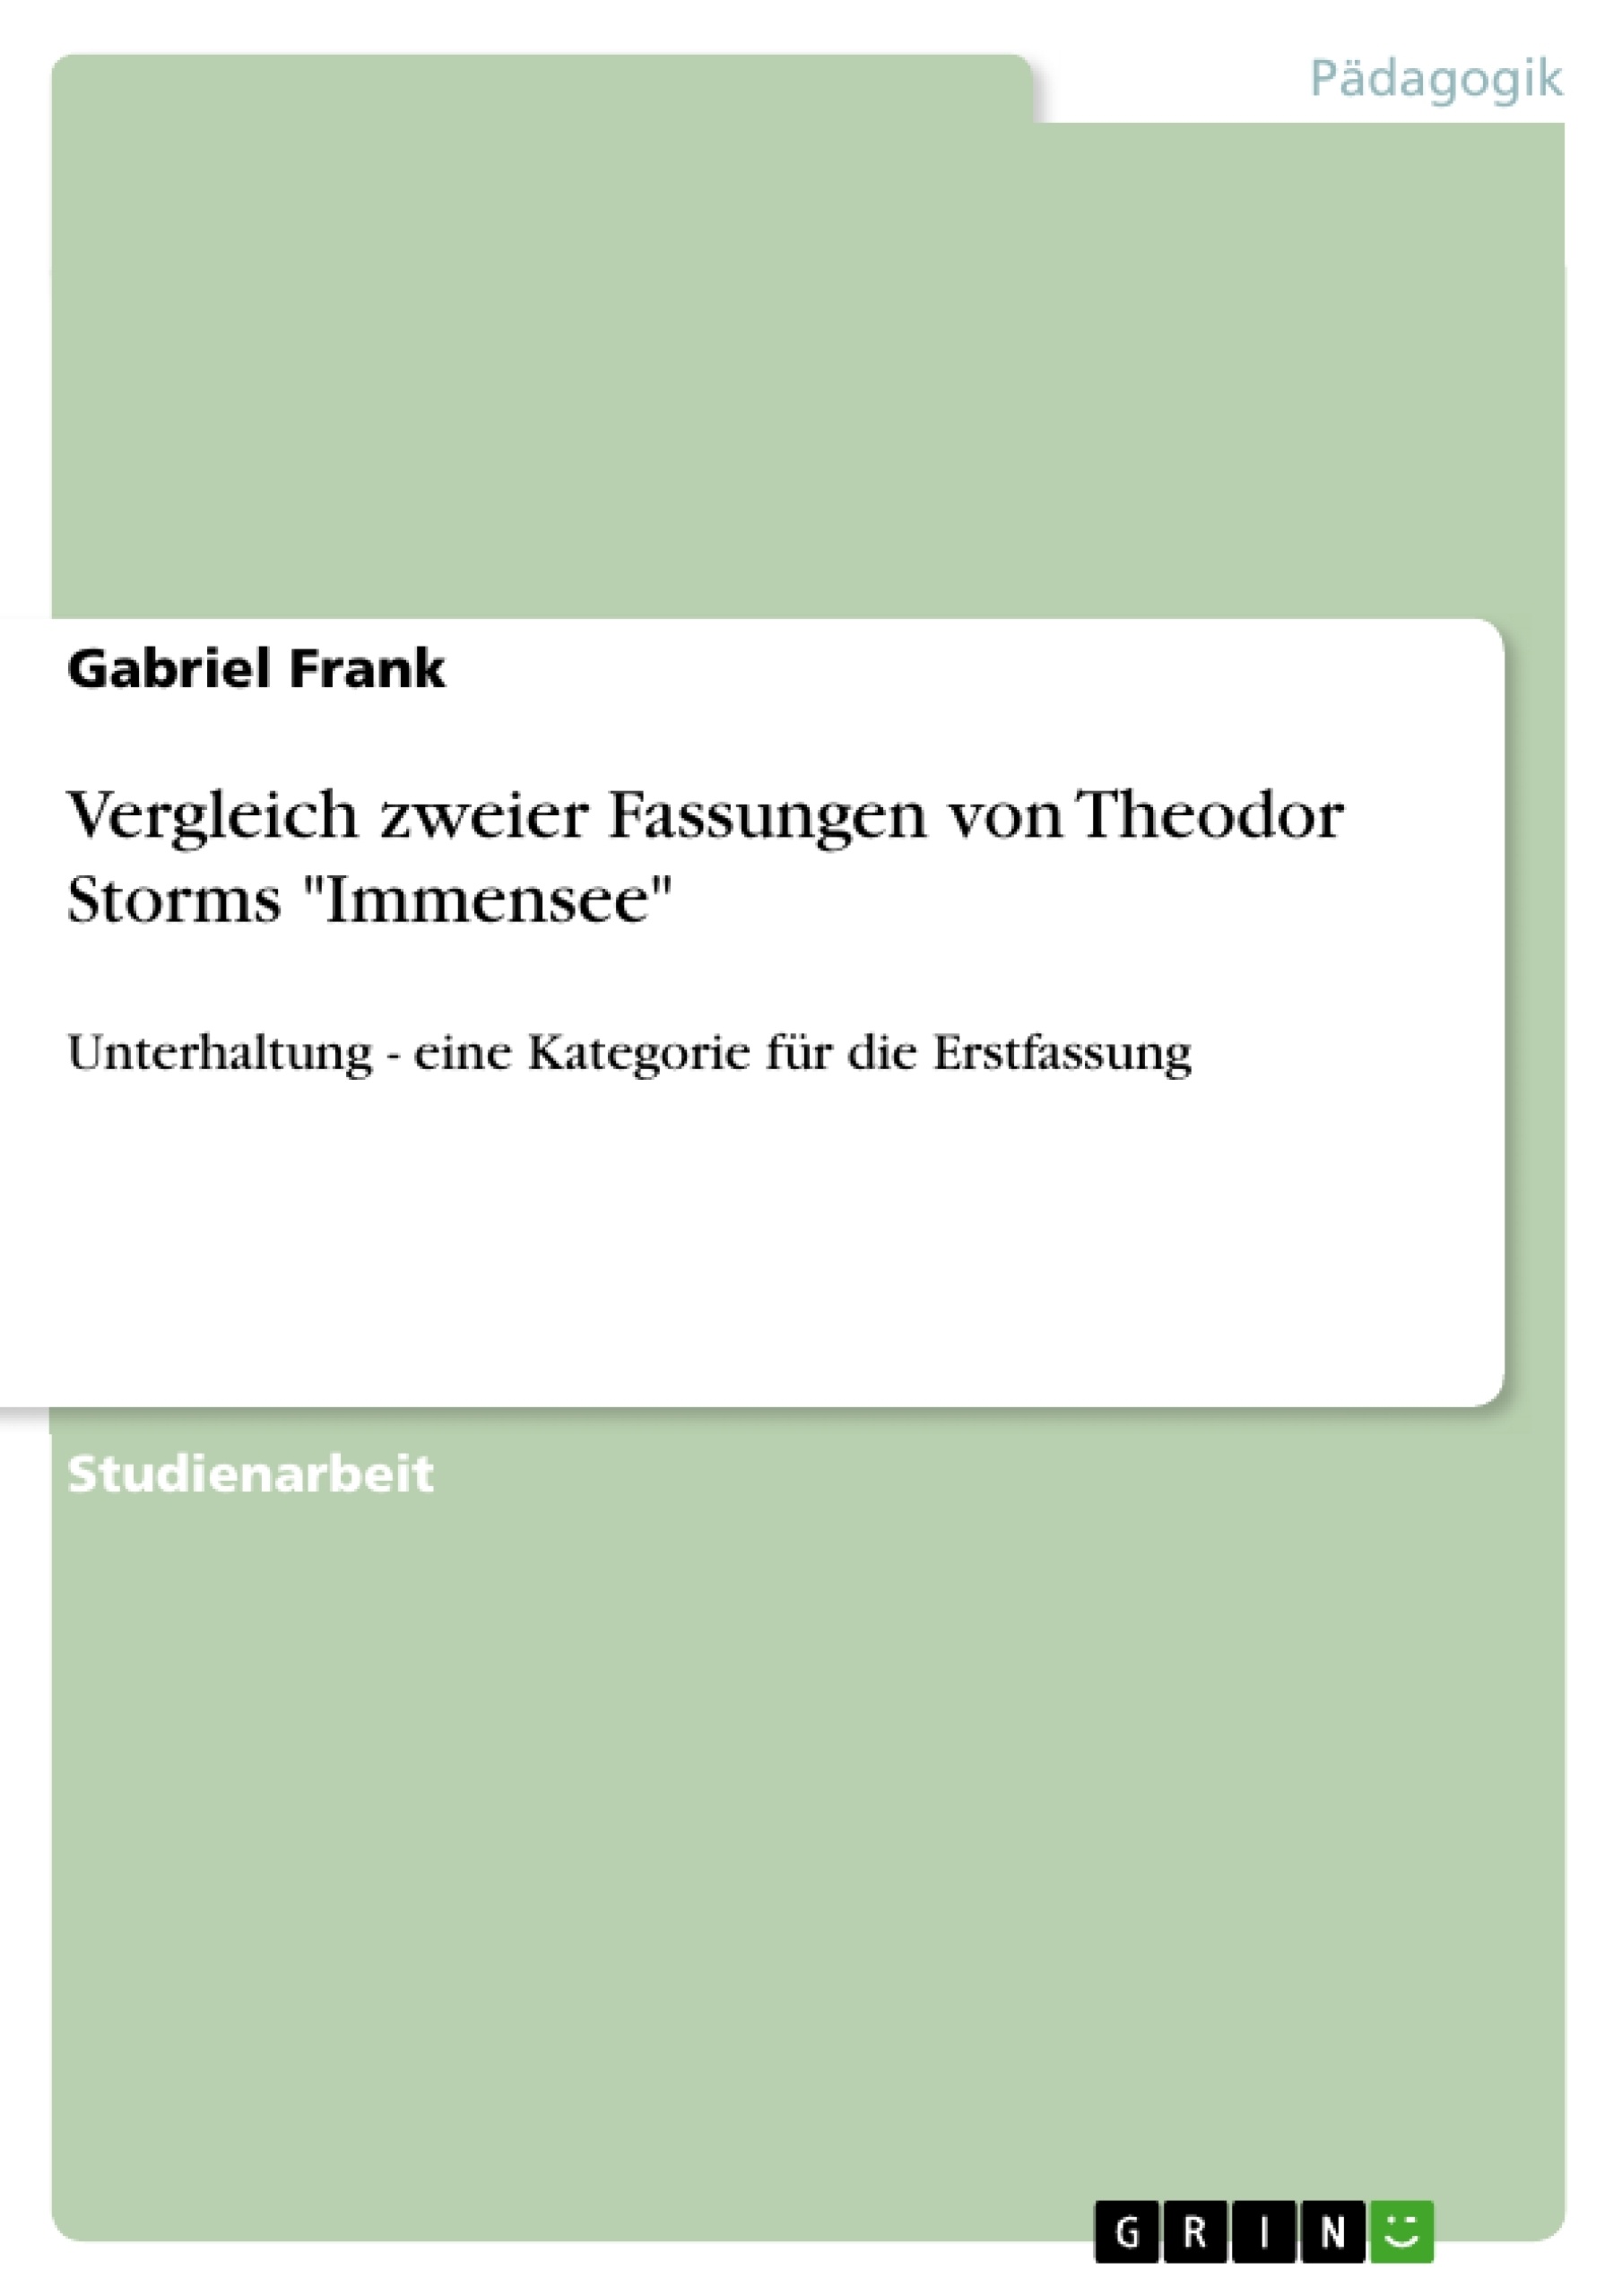 Titre: Vergleich zweier Fassungen von Theodor Storms "Immensee"